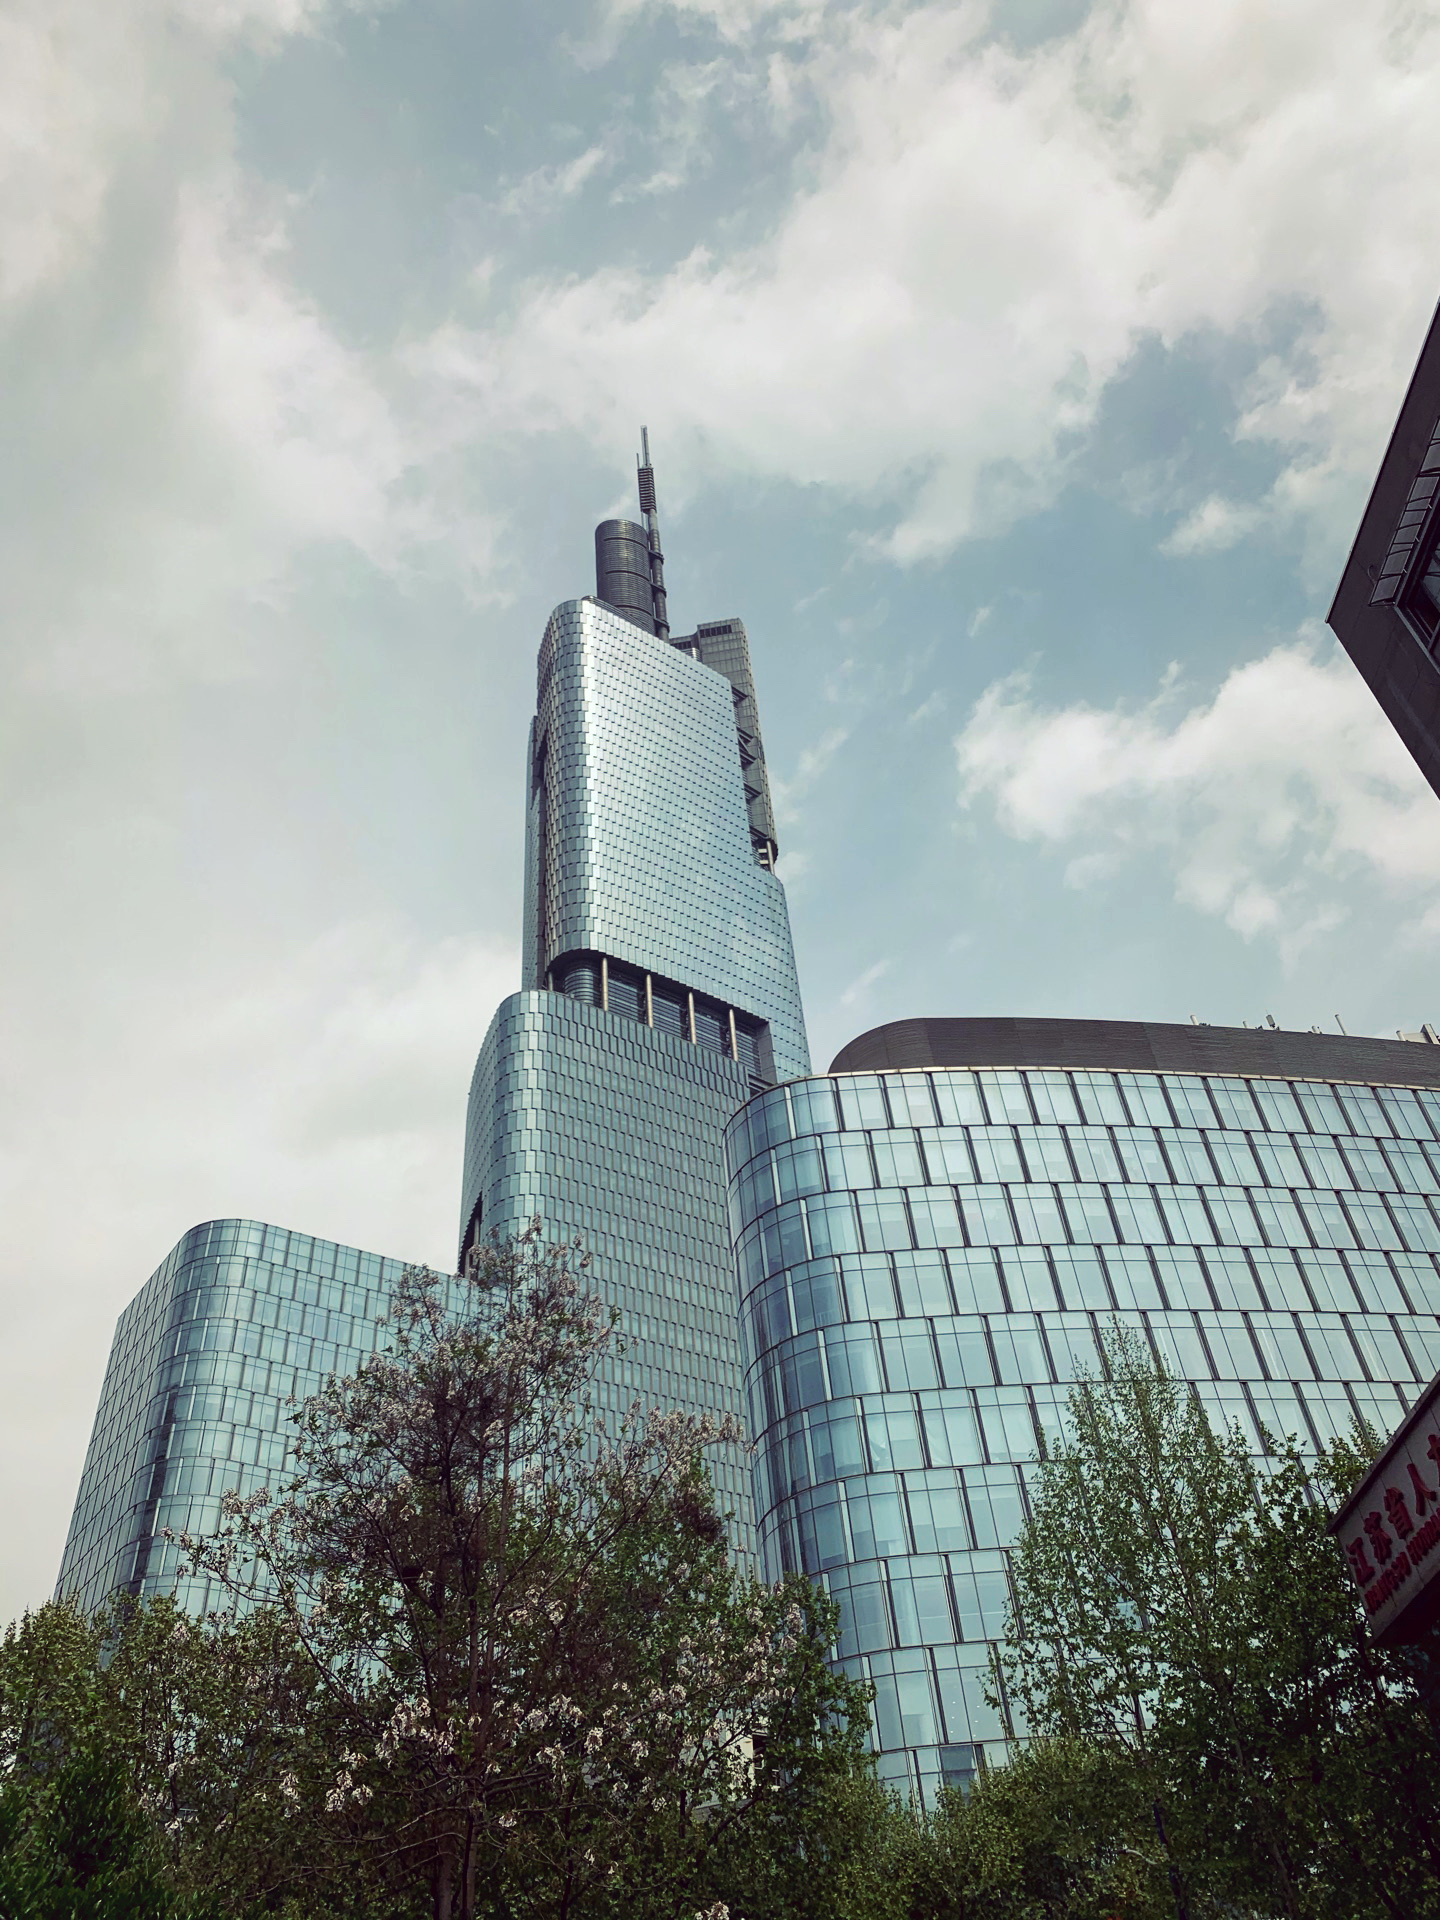 【携程攻略】南京紫峰购物广场(绿地广场)购物,紫峰大厦是江苏最高的